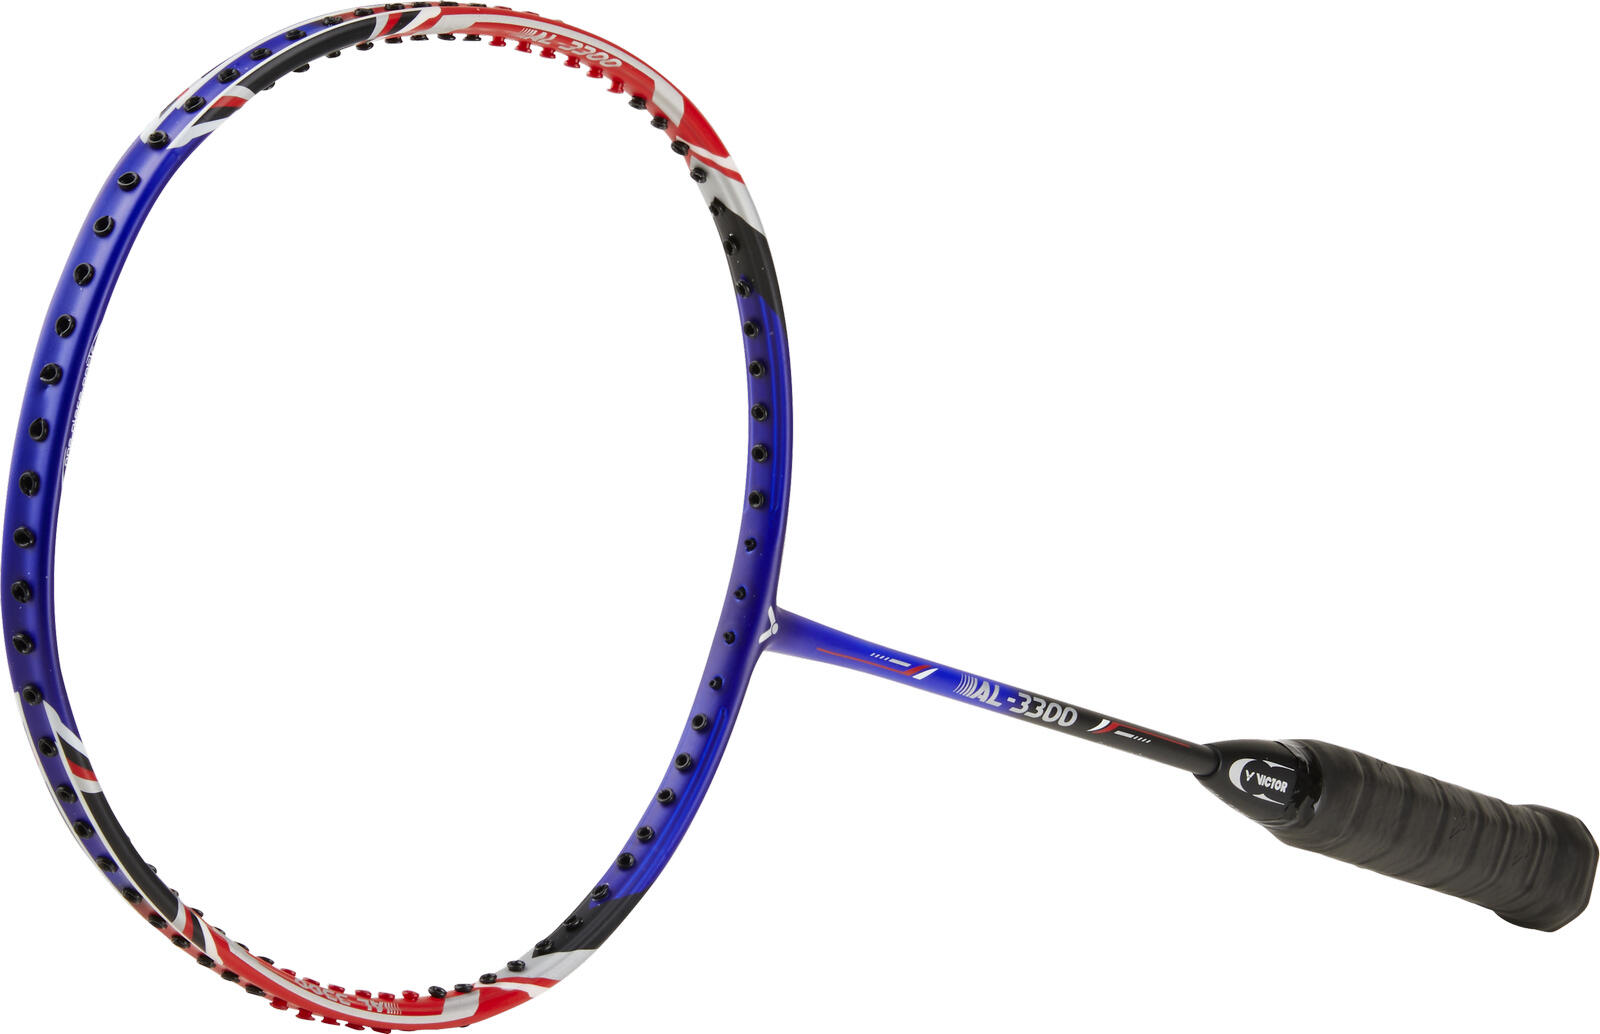 AL-3300 Badminton Racket 4/4